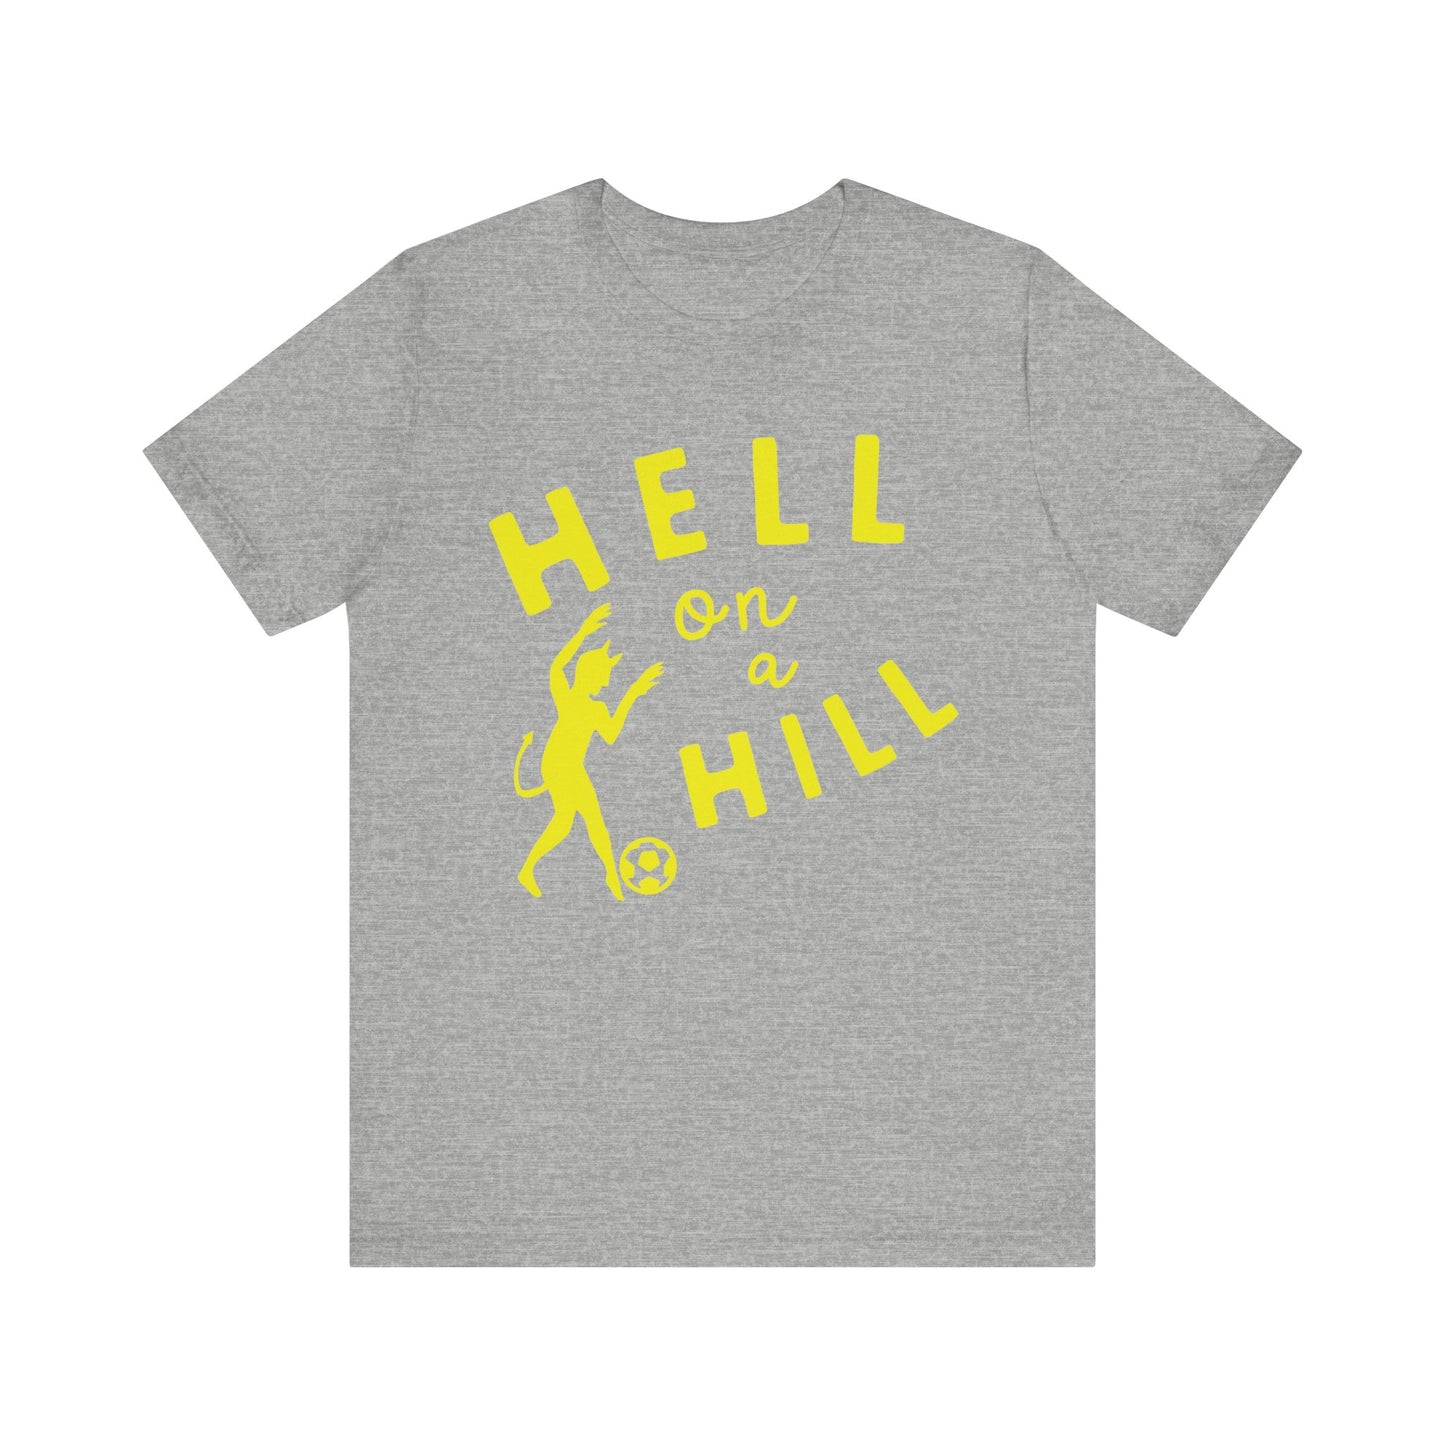 Hell on a Hill FOLK ART T-Shirt